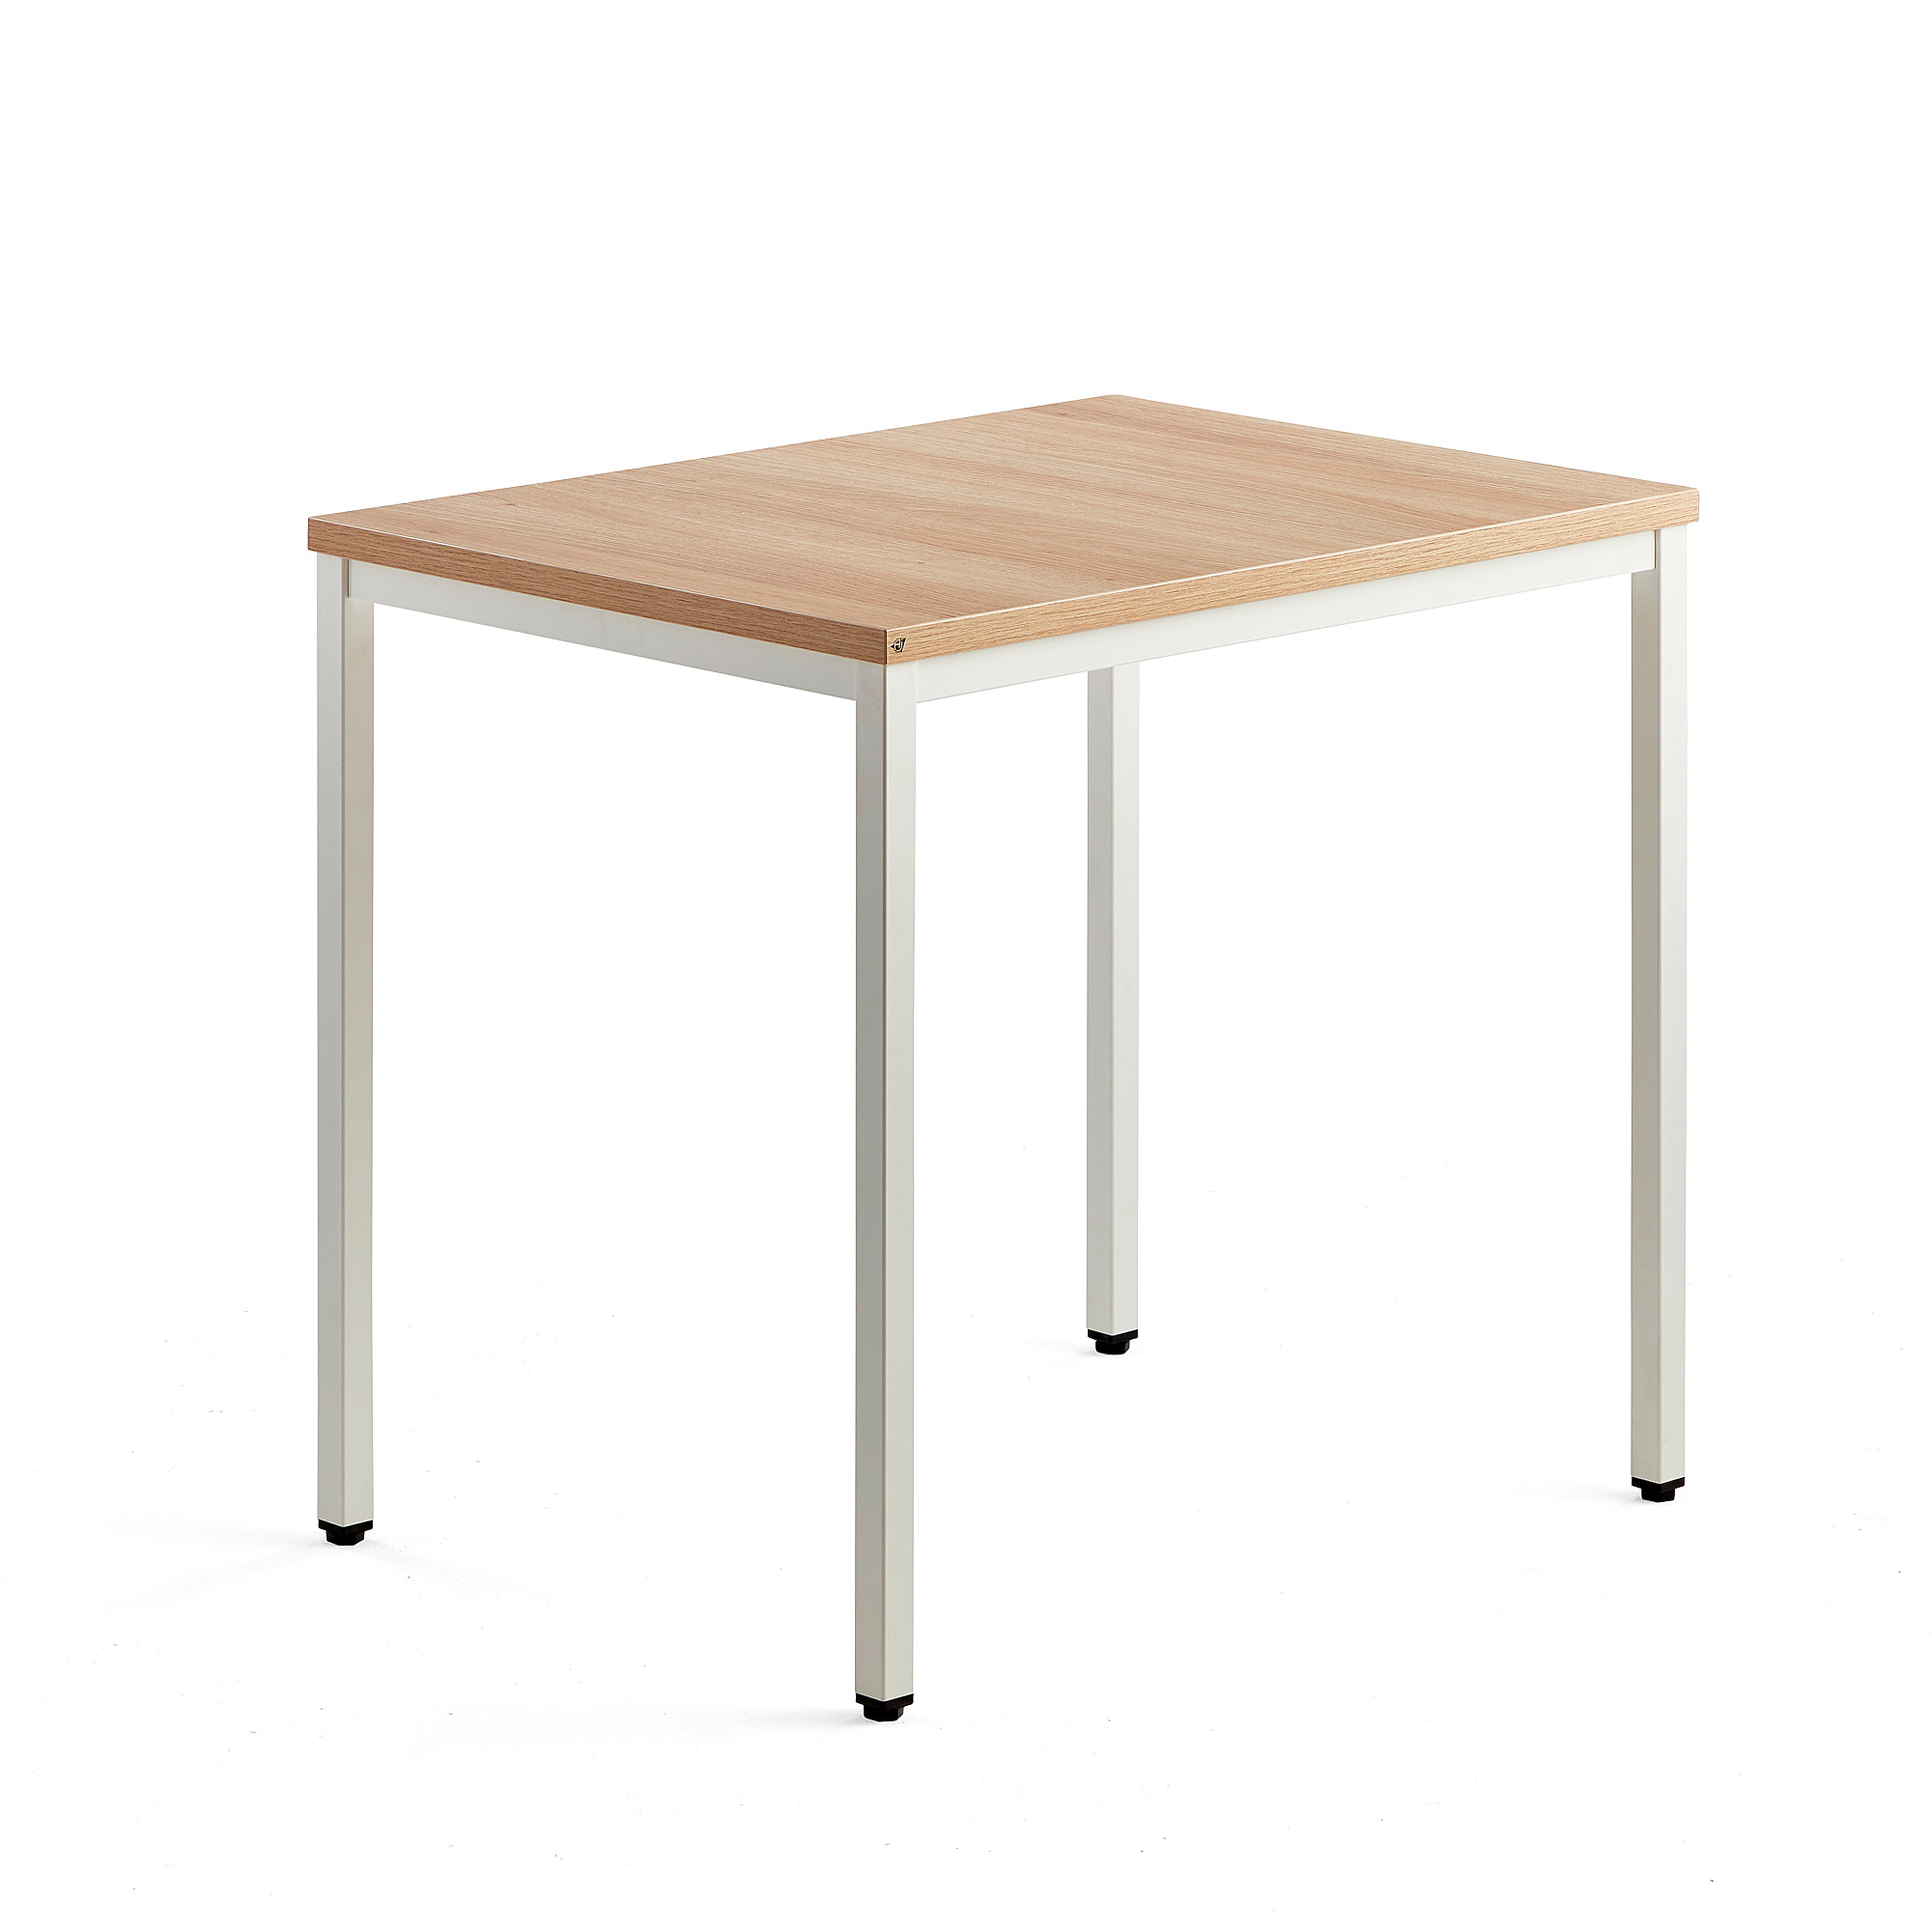 Přídavný stůl QBUS, 4 nohy, 800x600 mm, bílý rám, dub